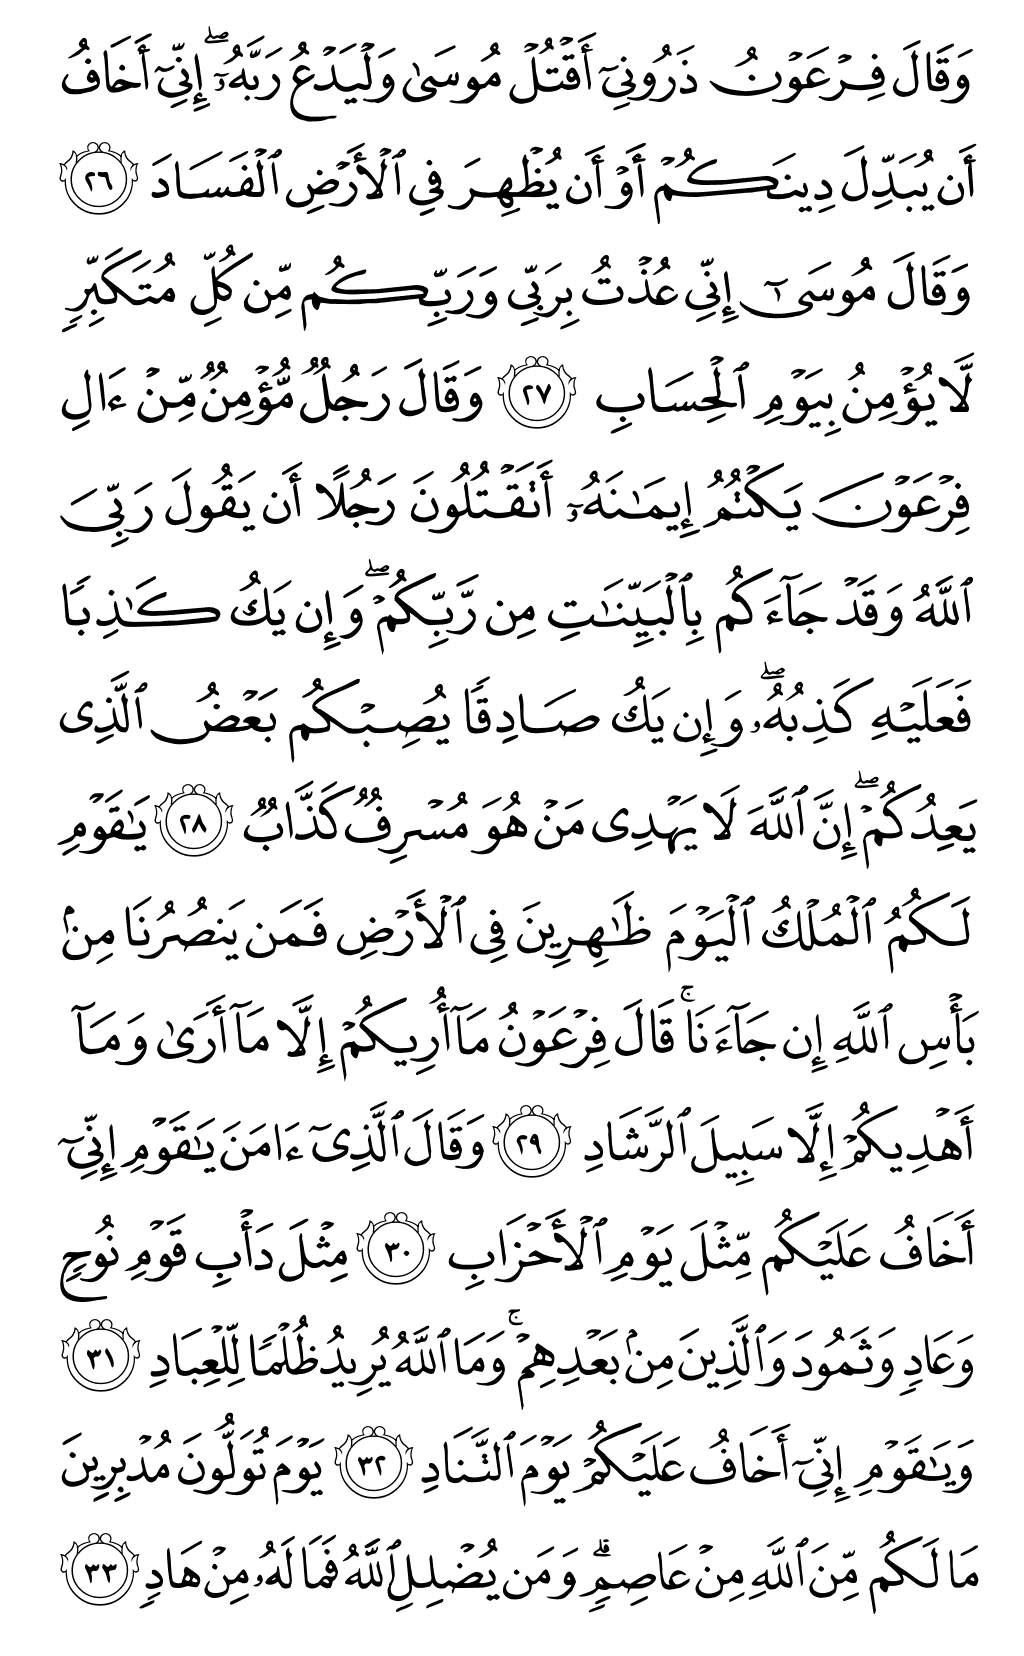 الصفحة رقم 470 من القرآن الكريم